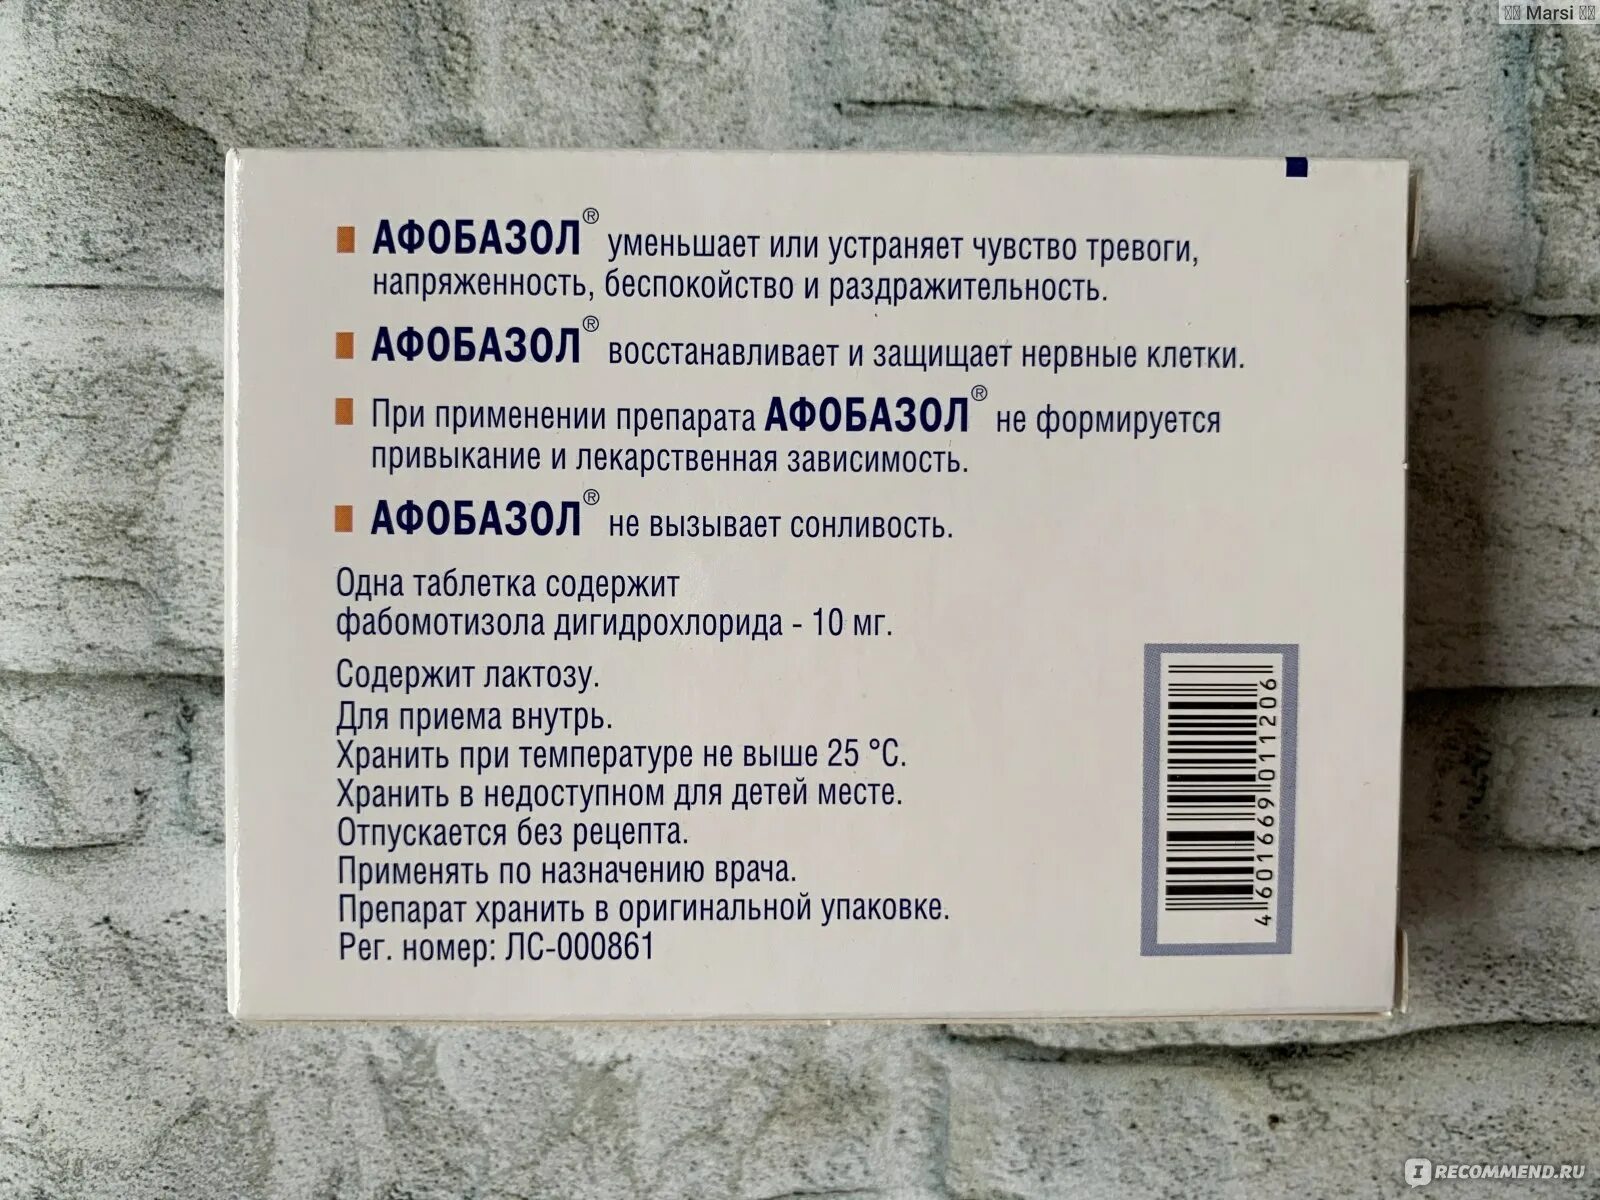 Афобазол инструкция отзывы пациентов принимавших препарат. Афобазол 60 мг. Афобазол производитель Германия. Афобазол 50 мг. Афобазол производитель.